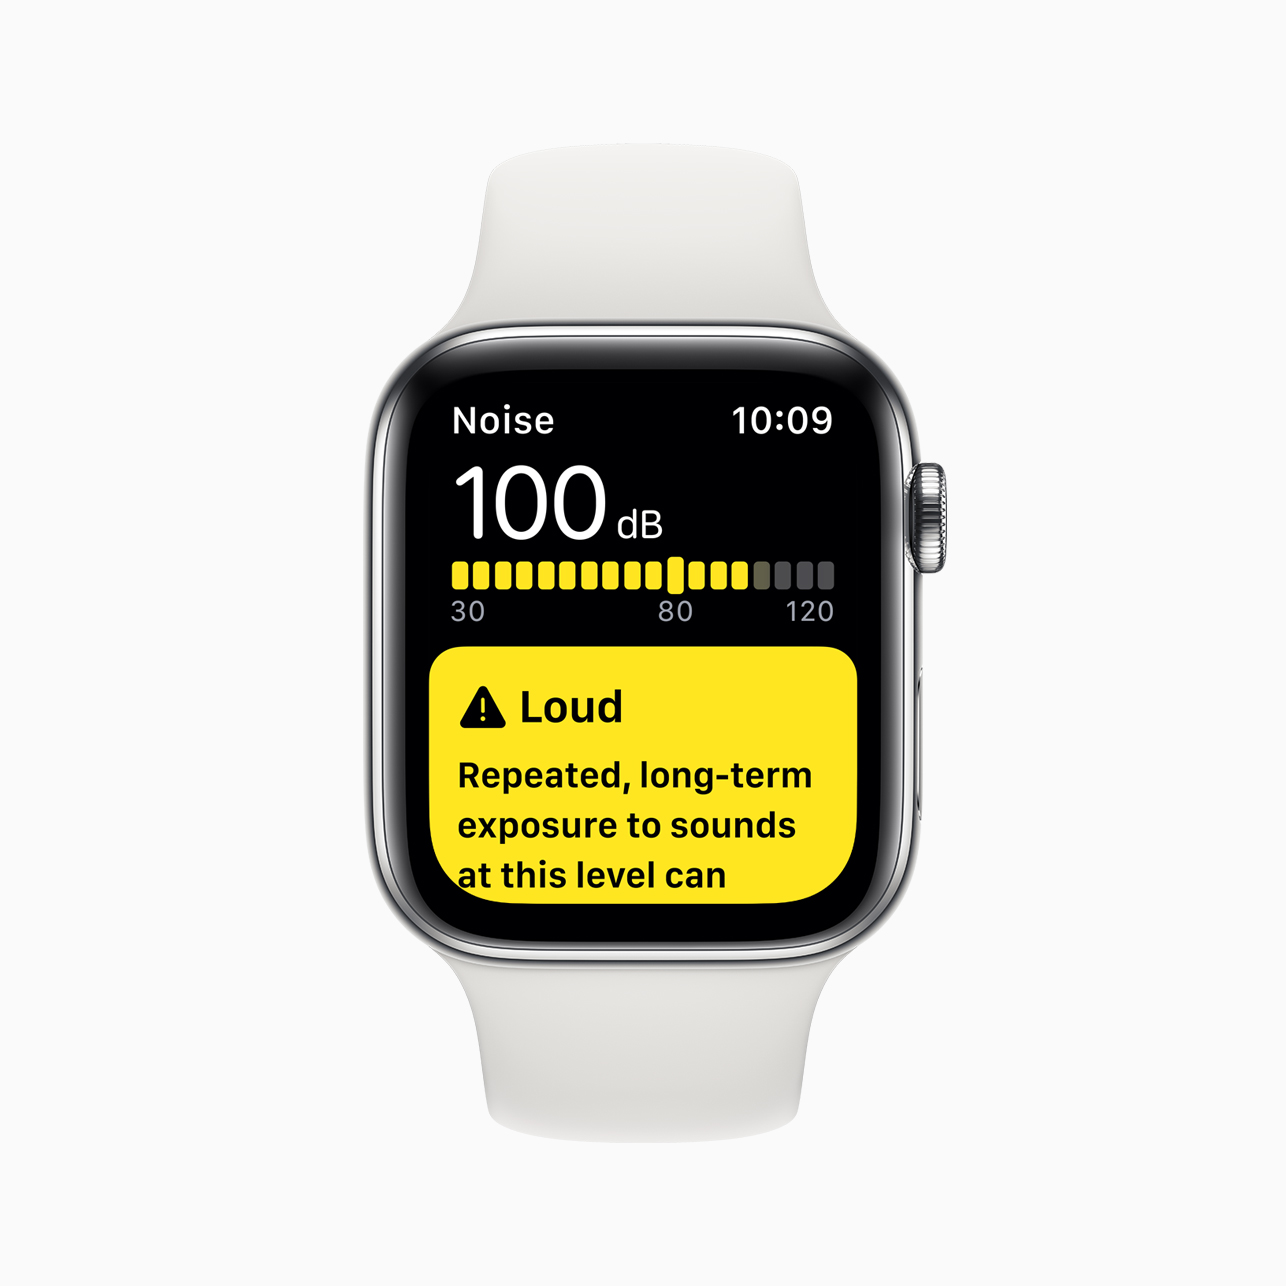 Apple Watch Series 5 napovedan z novim vedno vključenim mrežnim zaslonom s spremenljivo hitrostjo osveževanja in 18-urno življenjsko dobo baterije od samo 399 USD